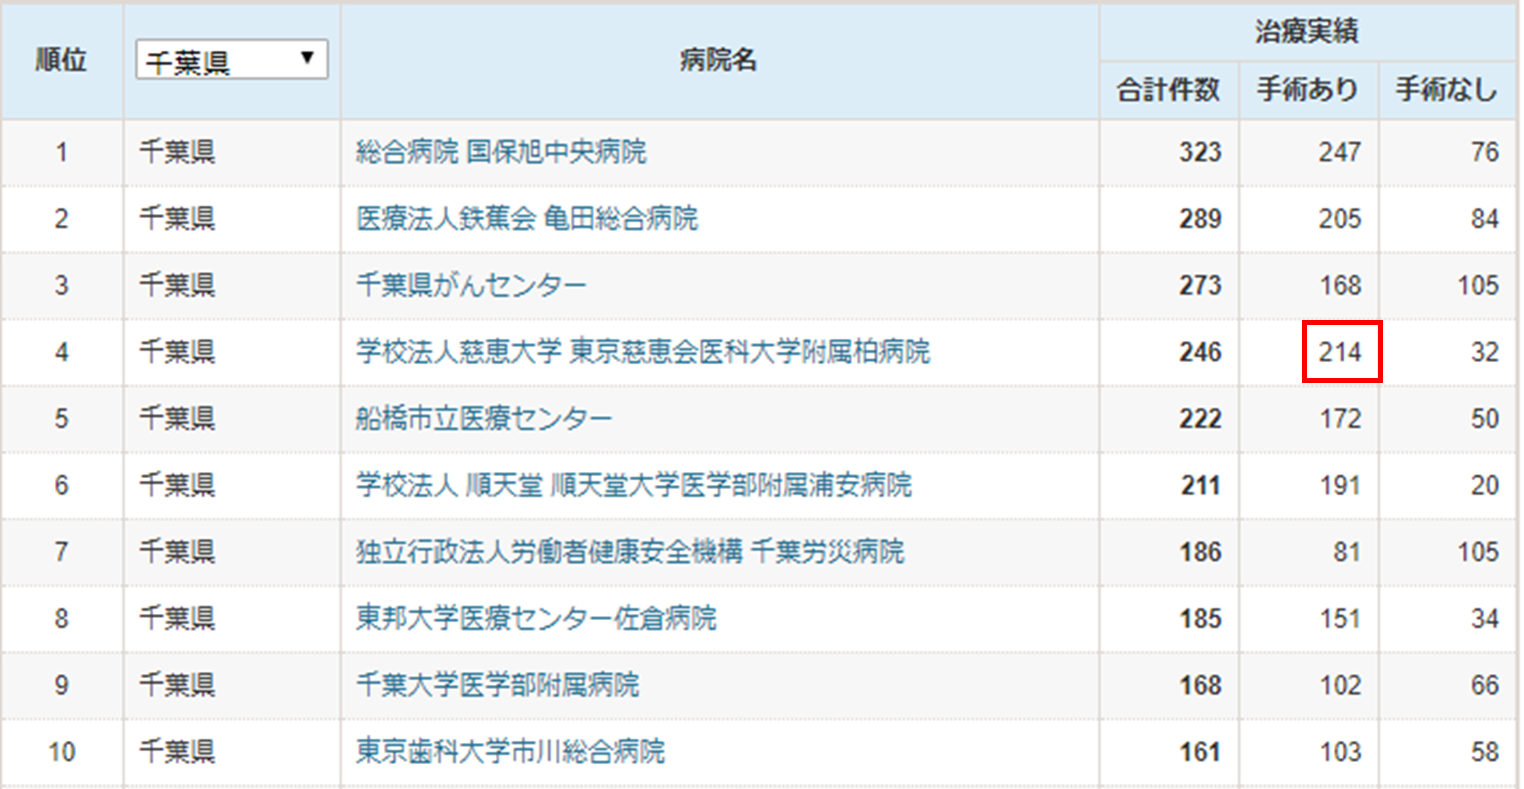 手術件数は第2位、そのうち膀胱全摘術33件は千葉県No.1です。